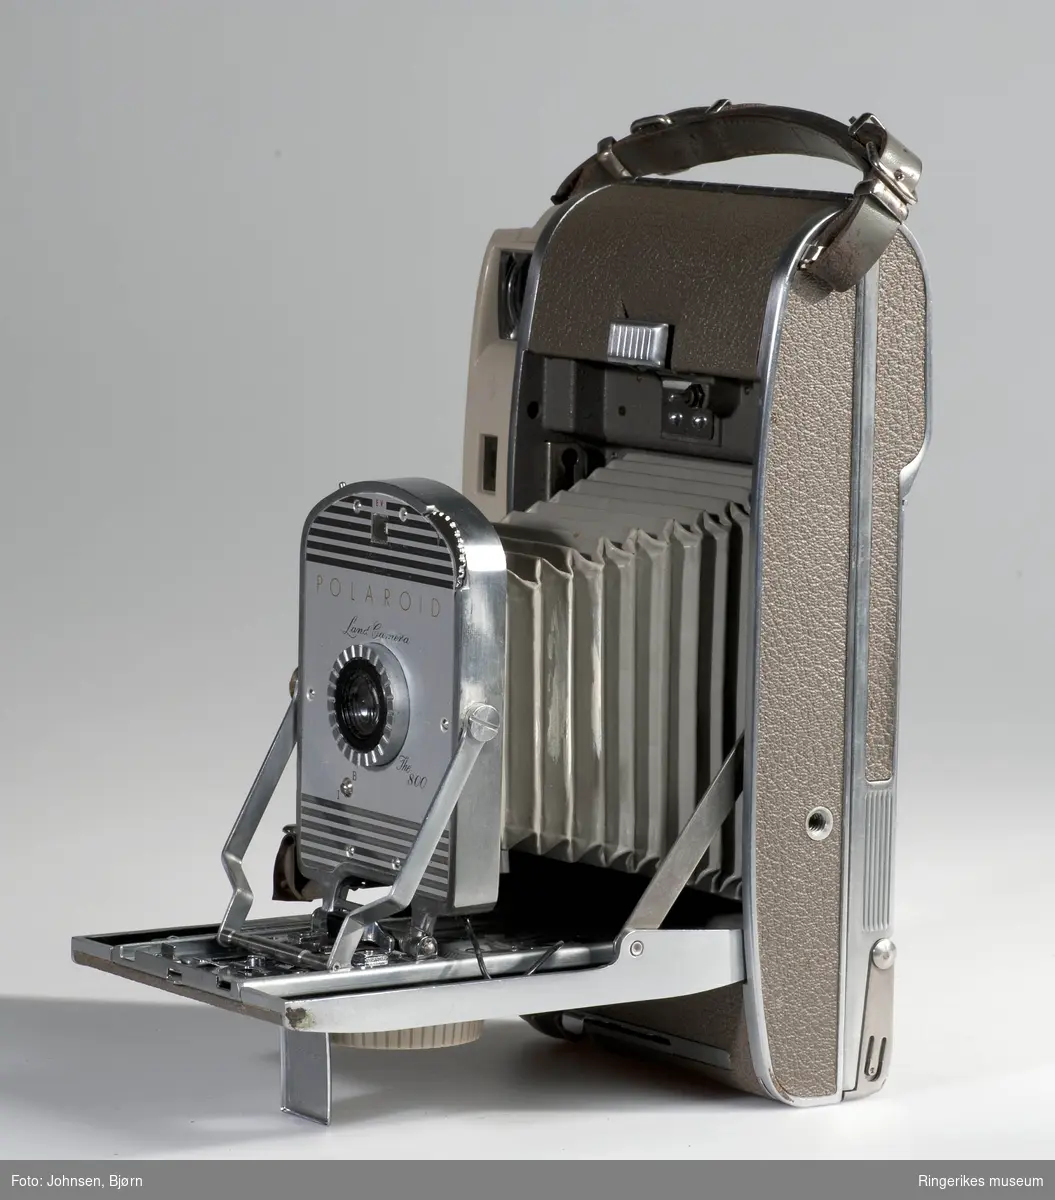 Polaroid Land camera med Eske og Bruksanvisning

1957